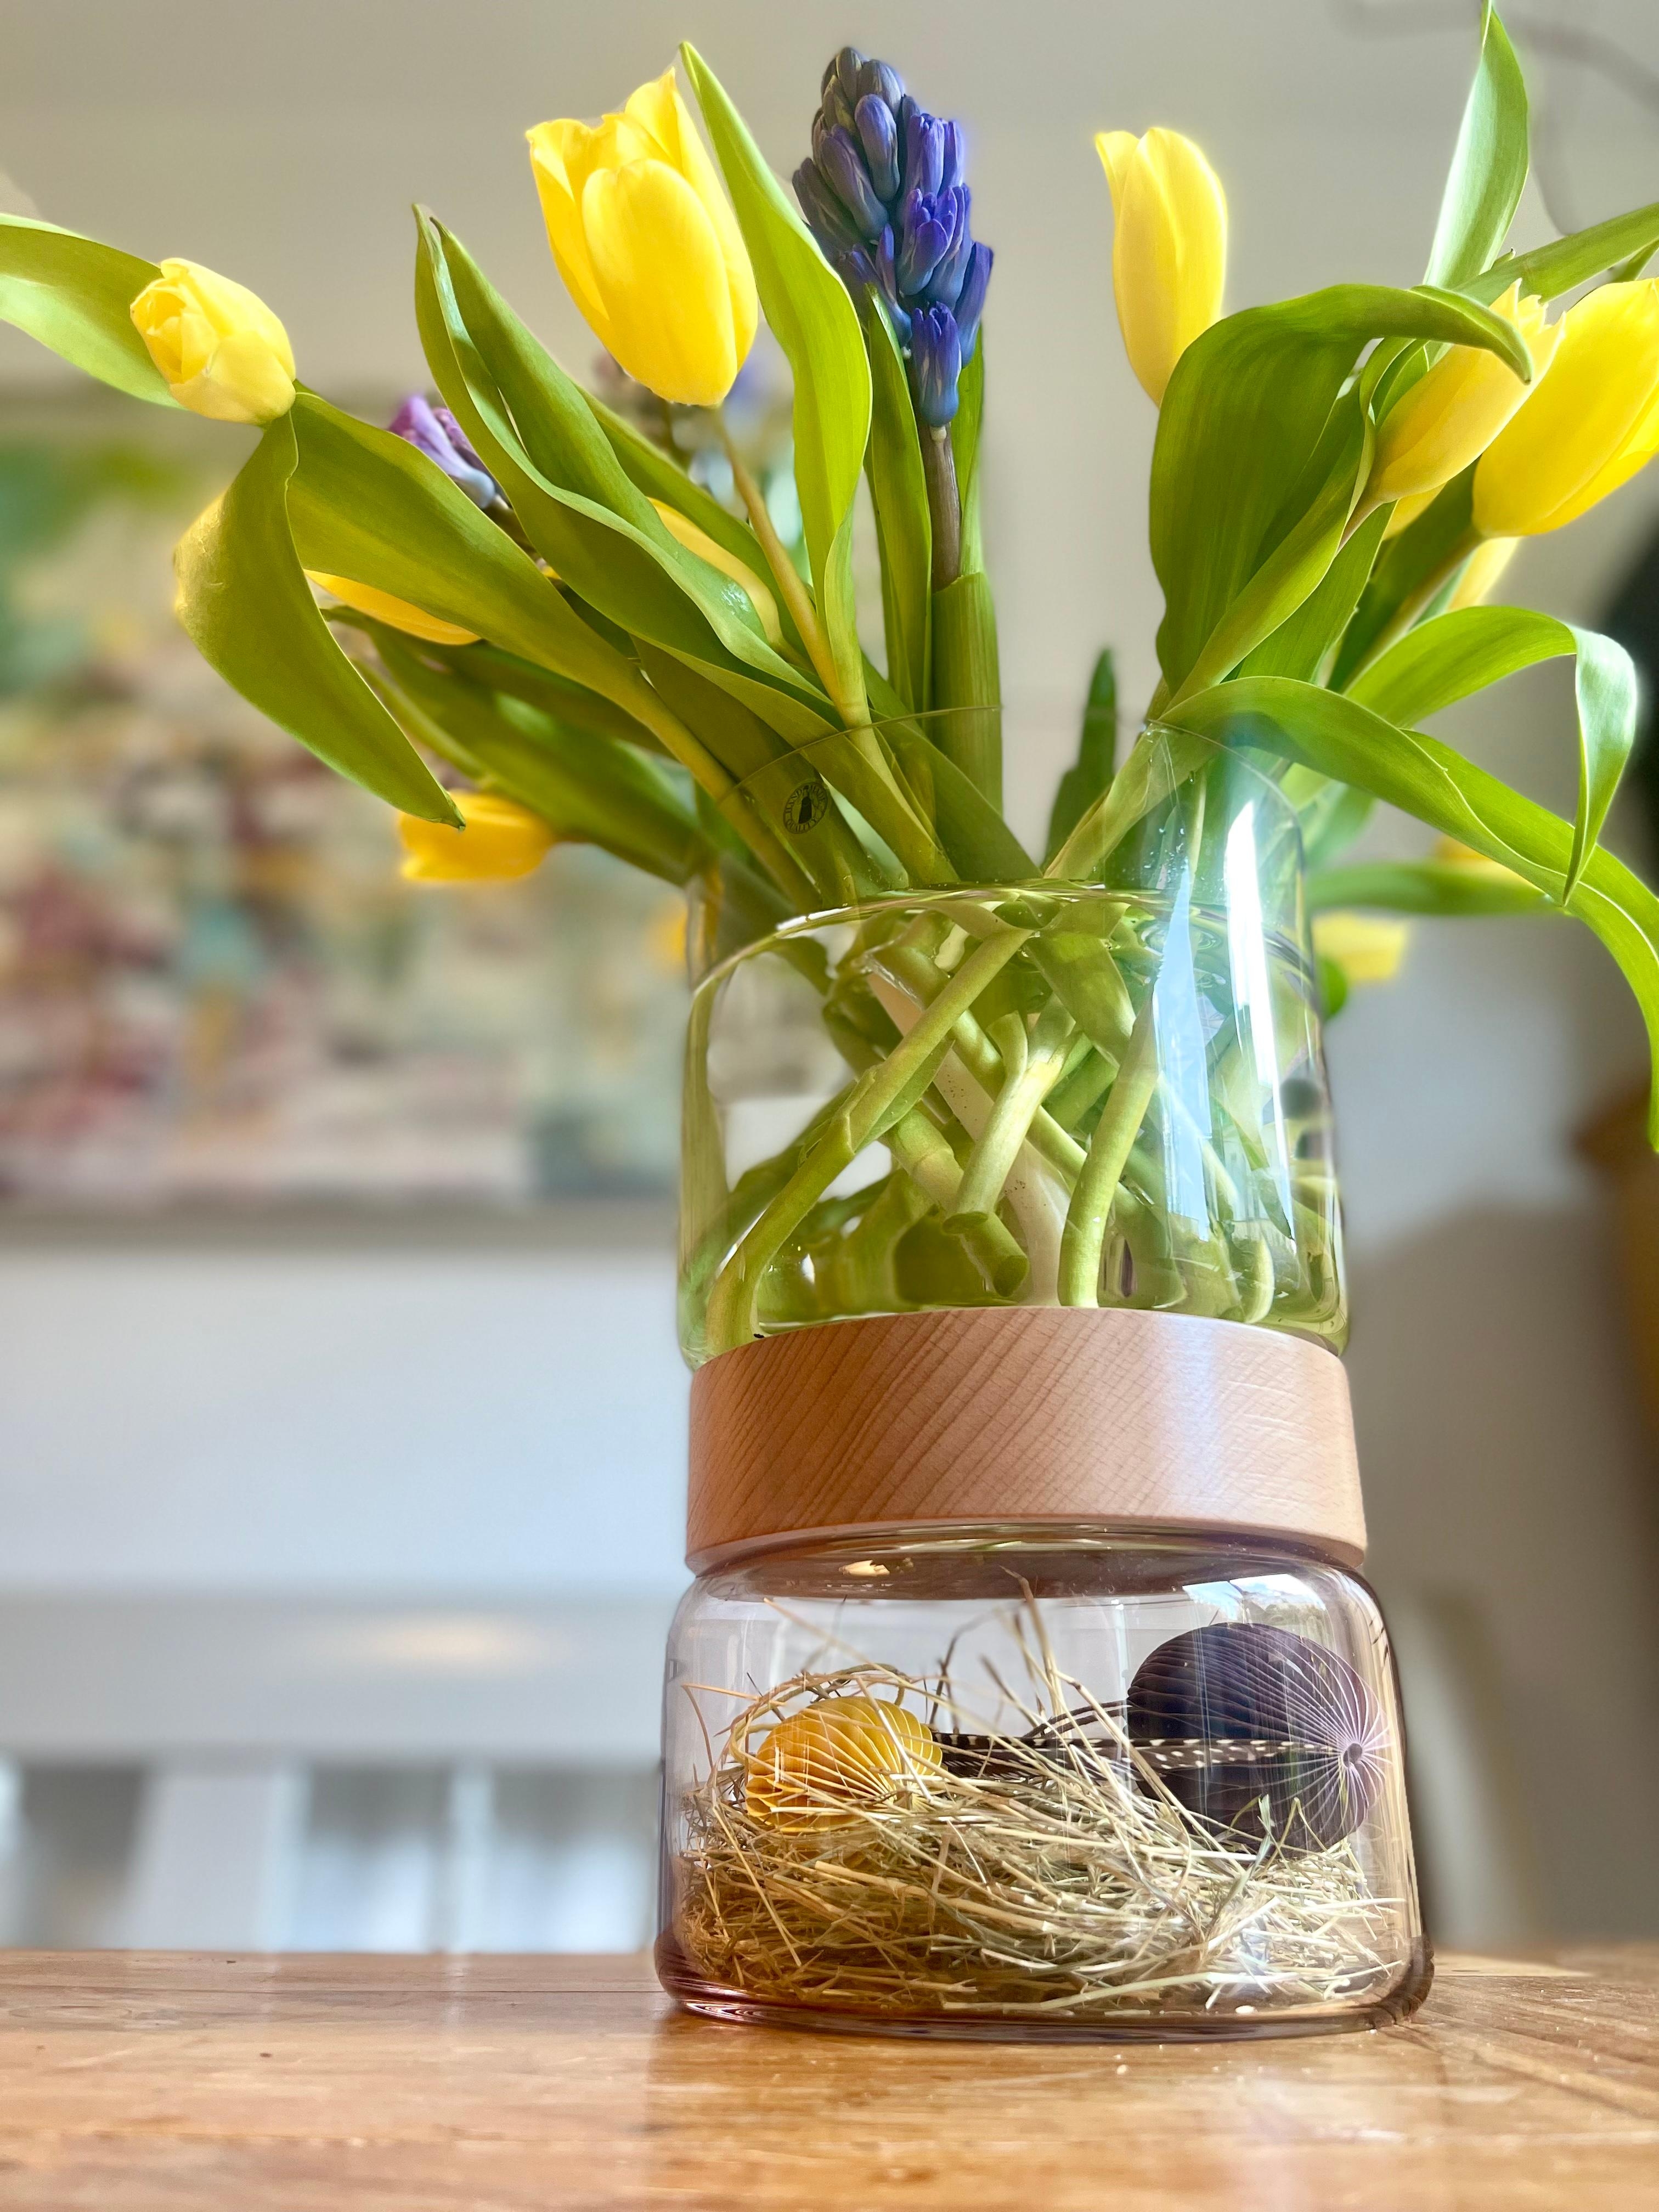 #2Kammervase #dekorieren #vase #lieblingsvase #tulpen #hyanzinthen #ostern #osterdeko #freshflowers